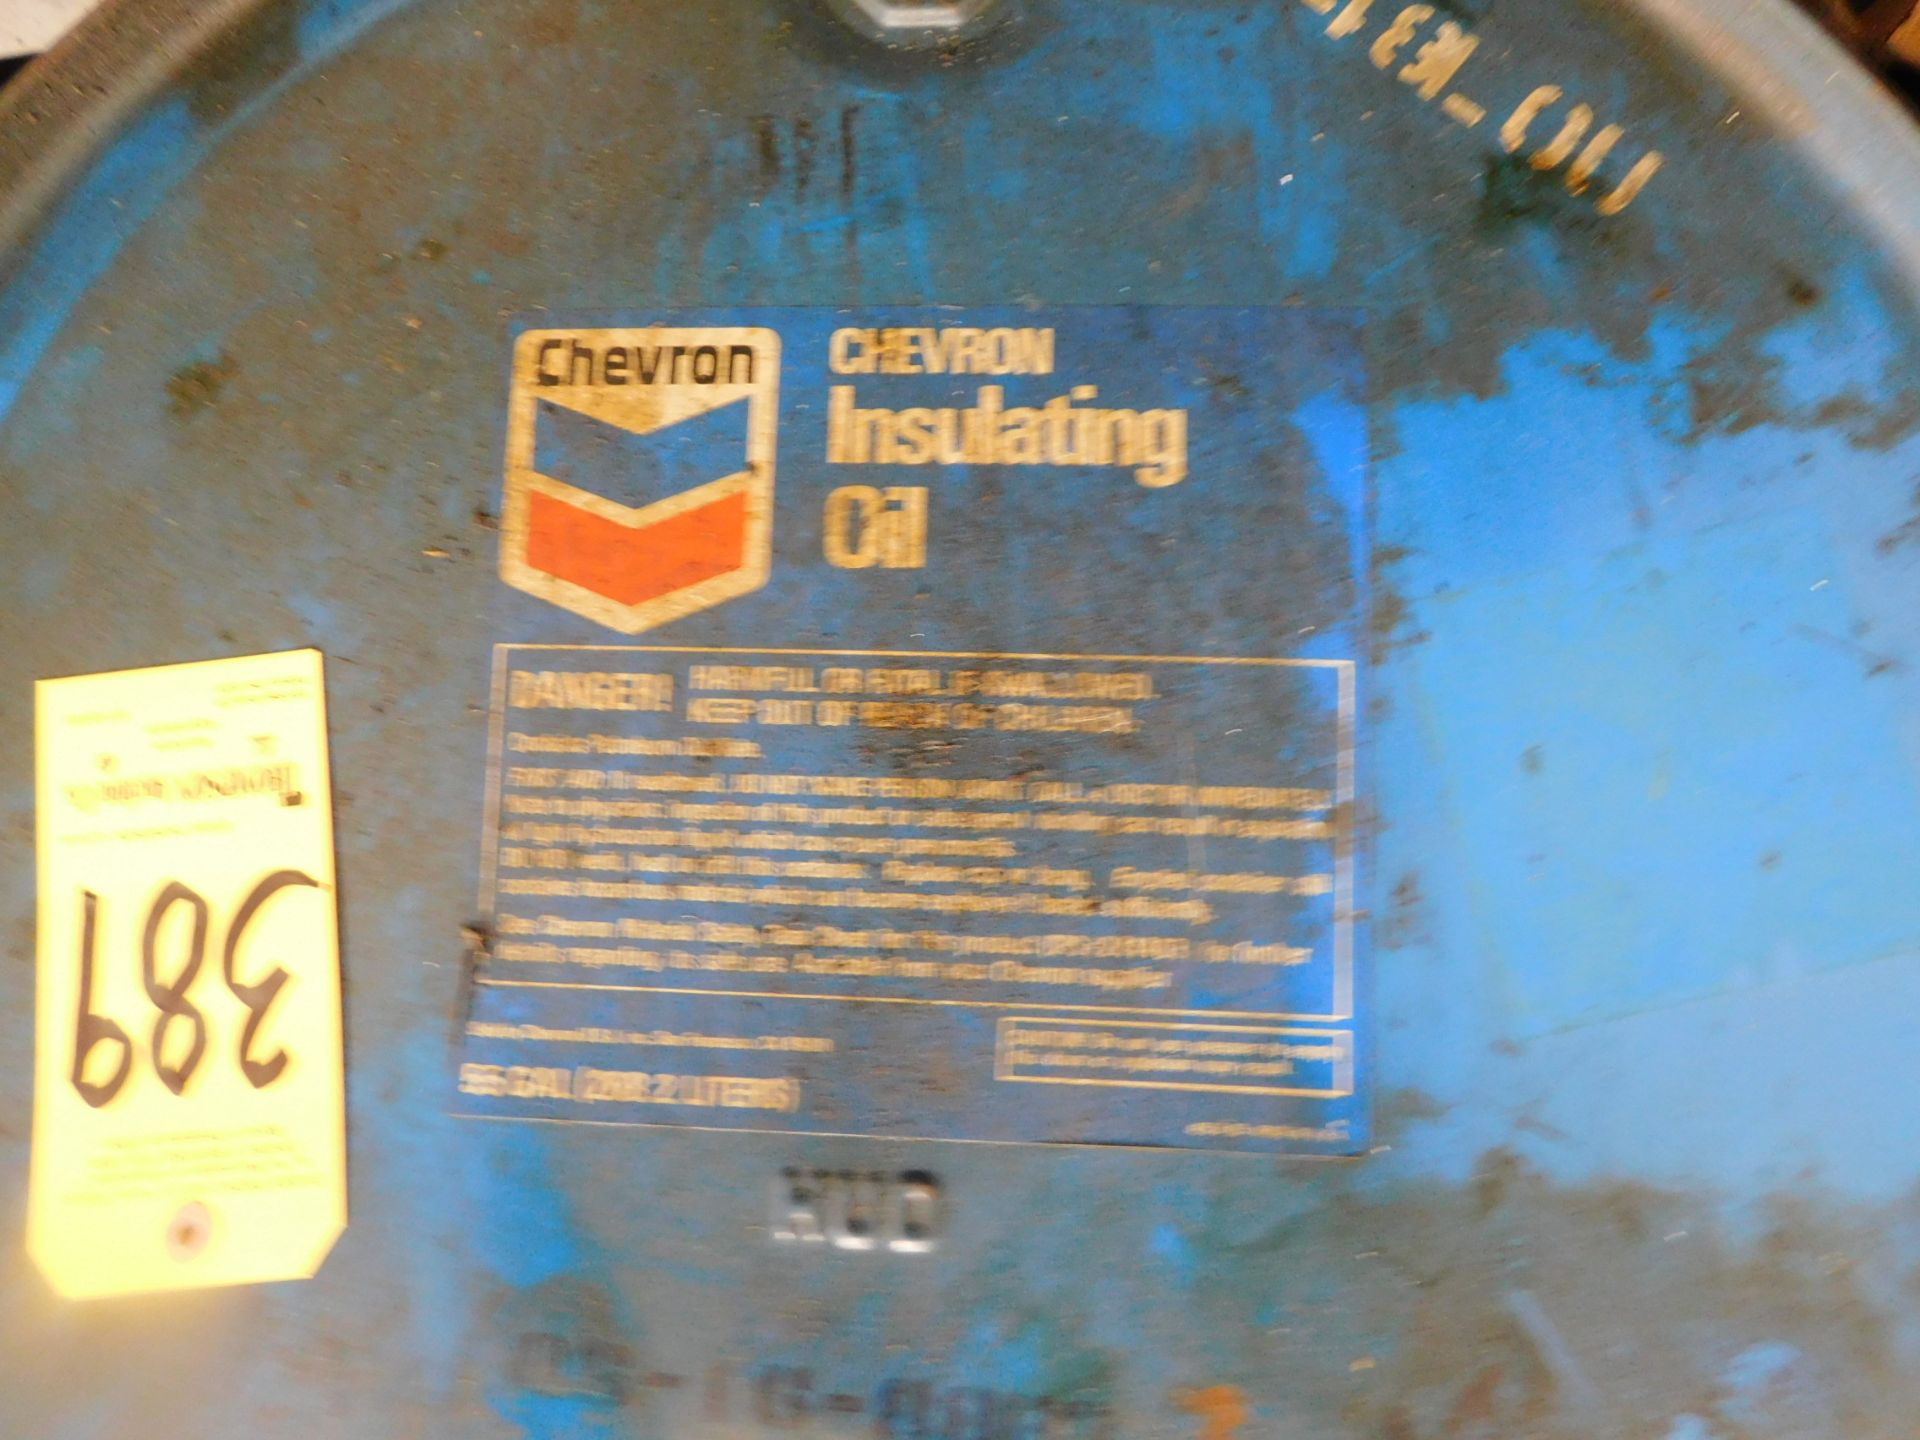 Cheveron Insulating Oil, 55 Gallon Drum